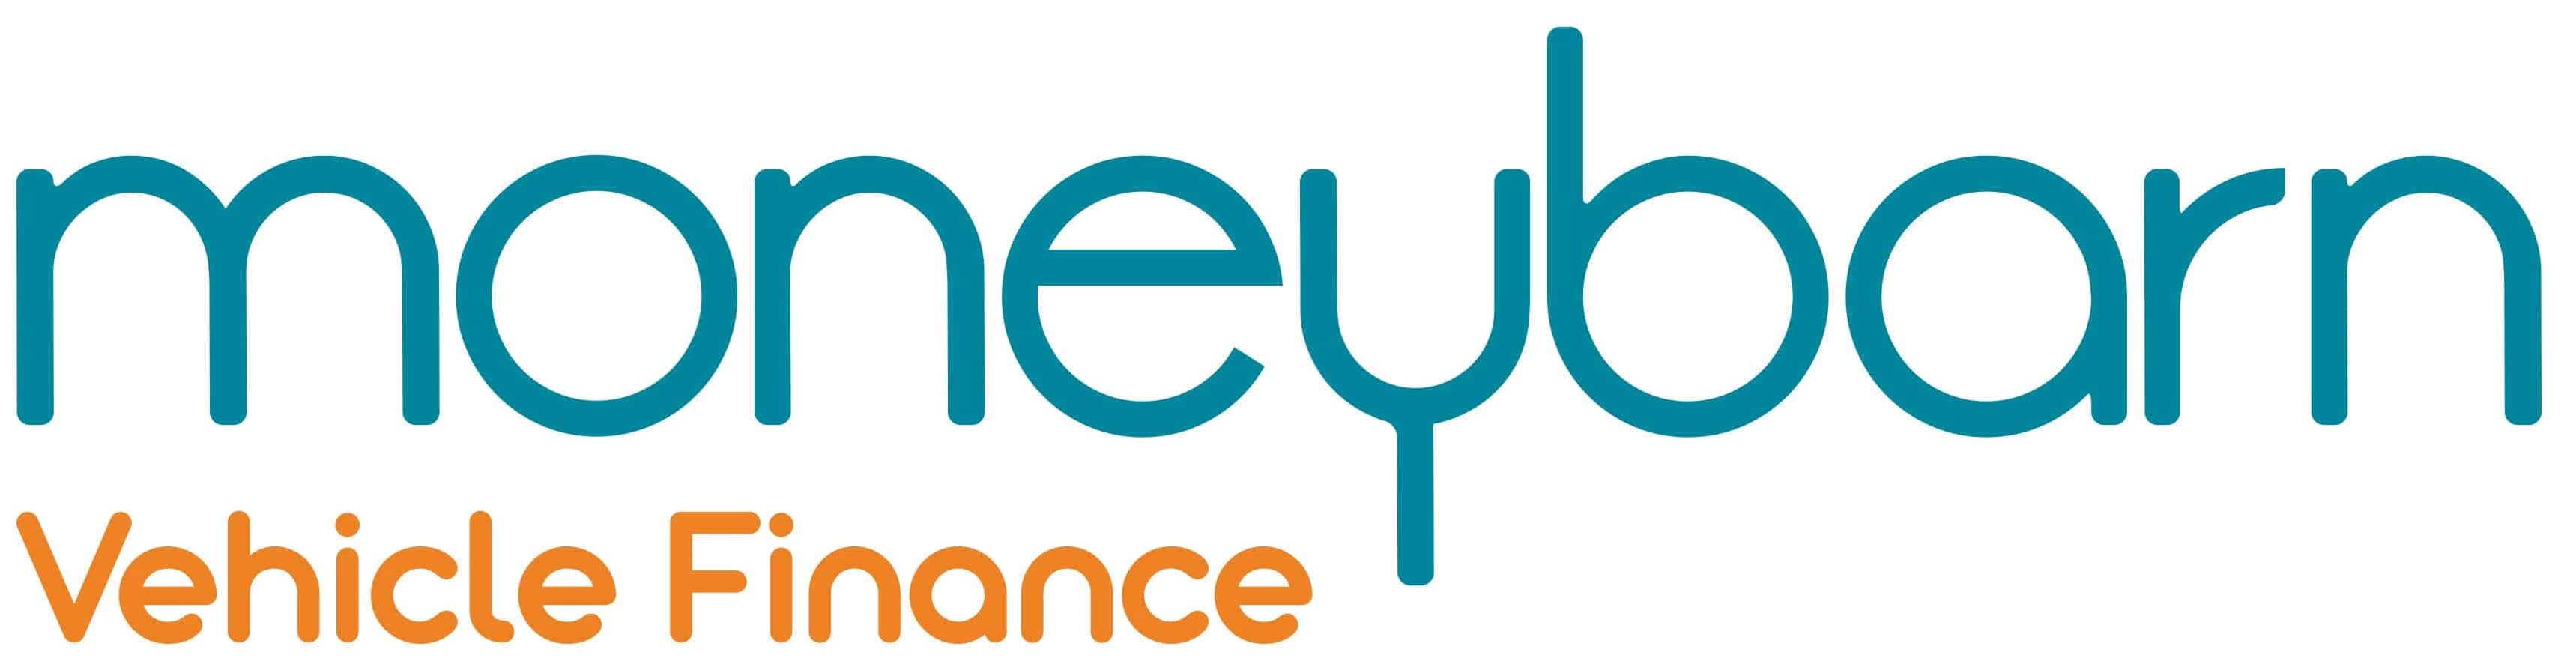 Moneybarn vehicle finance logo